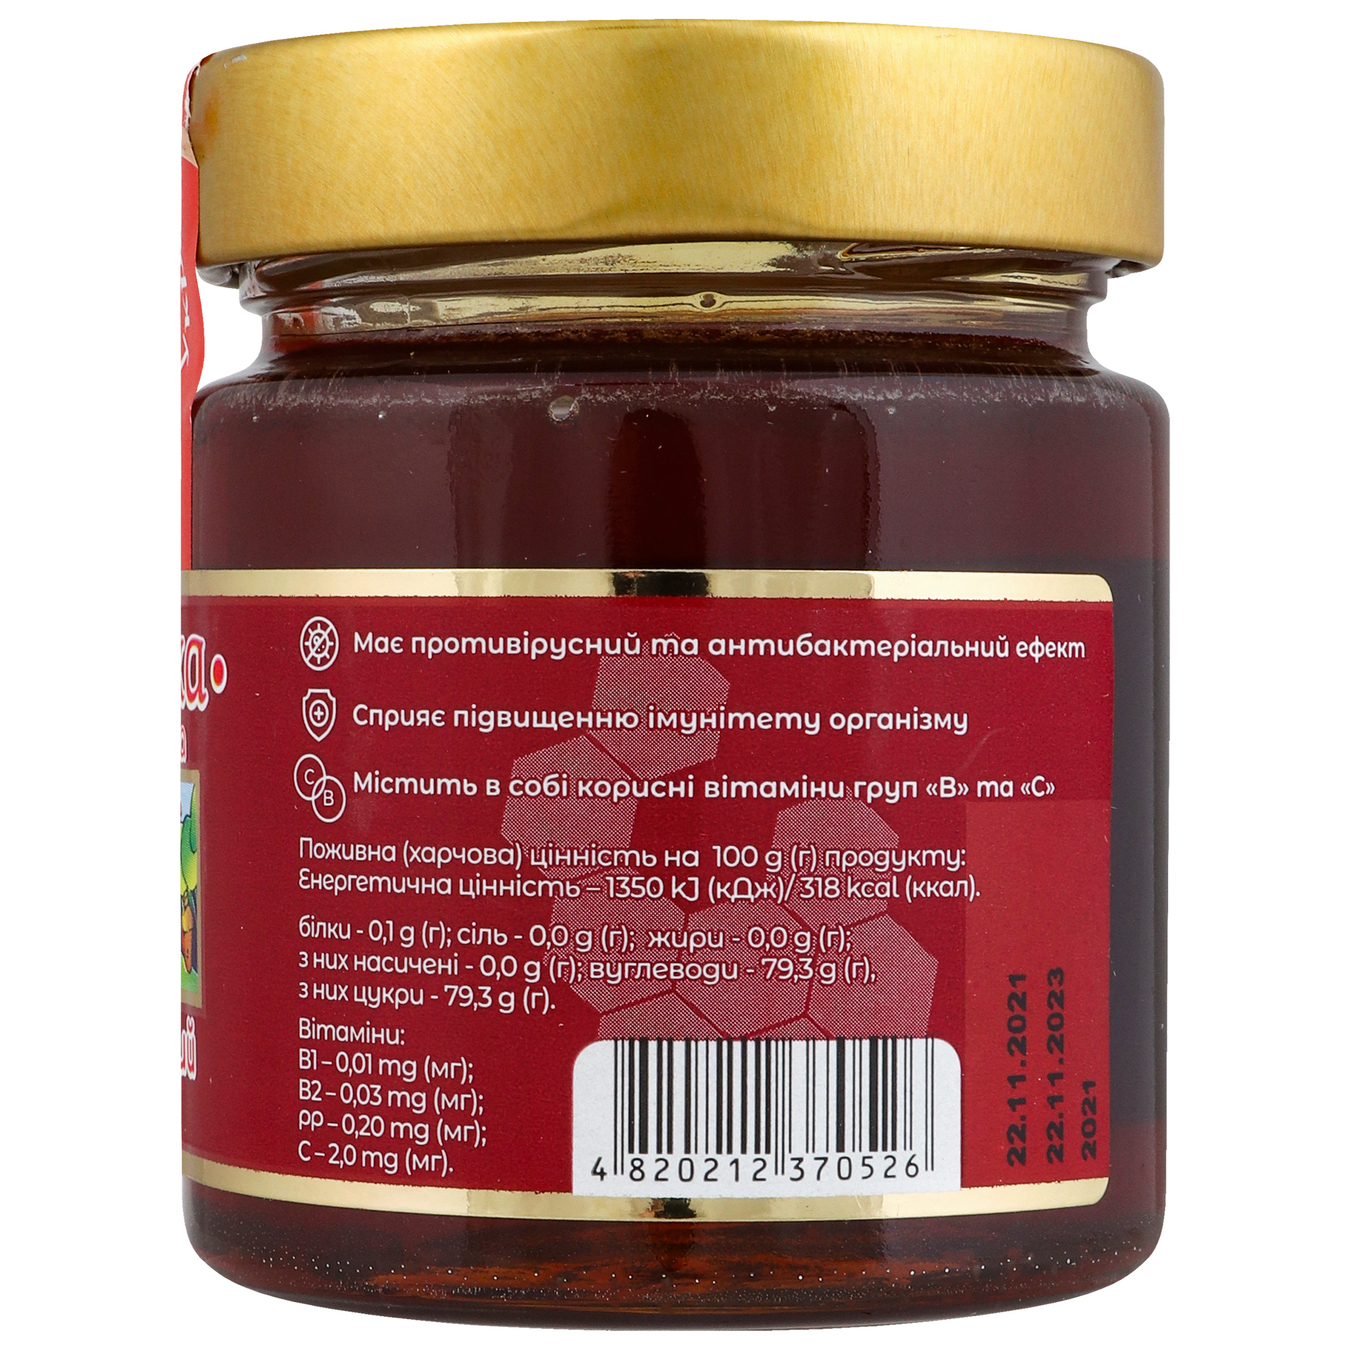 Buckwheat honey Pasika natural glass jar 250g 4